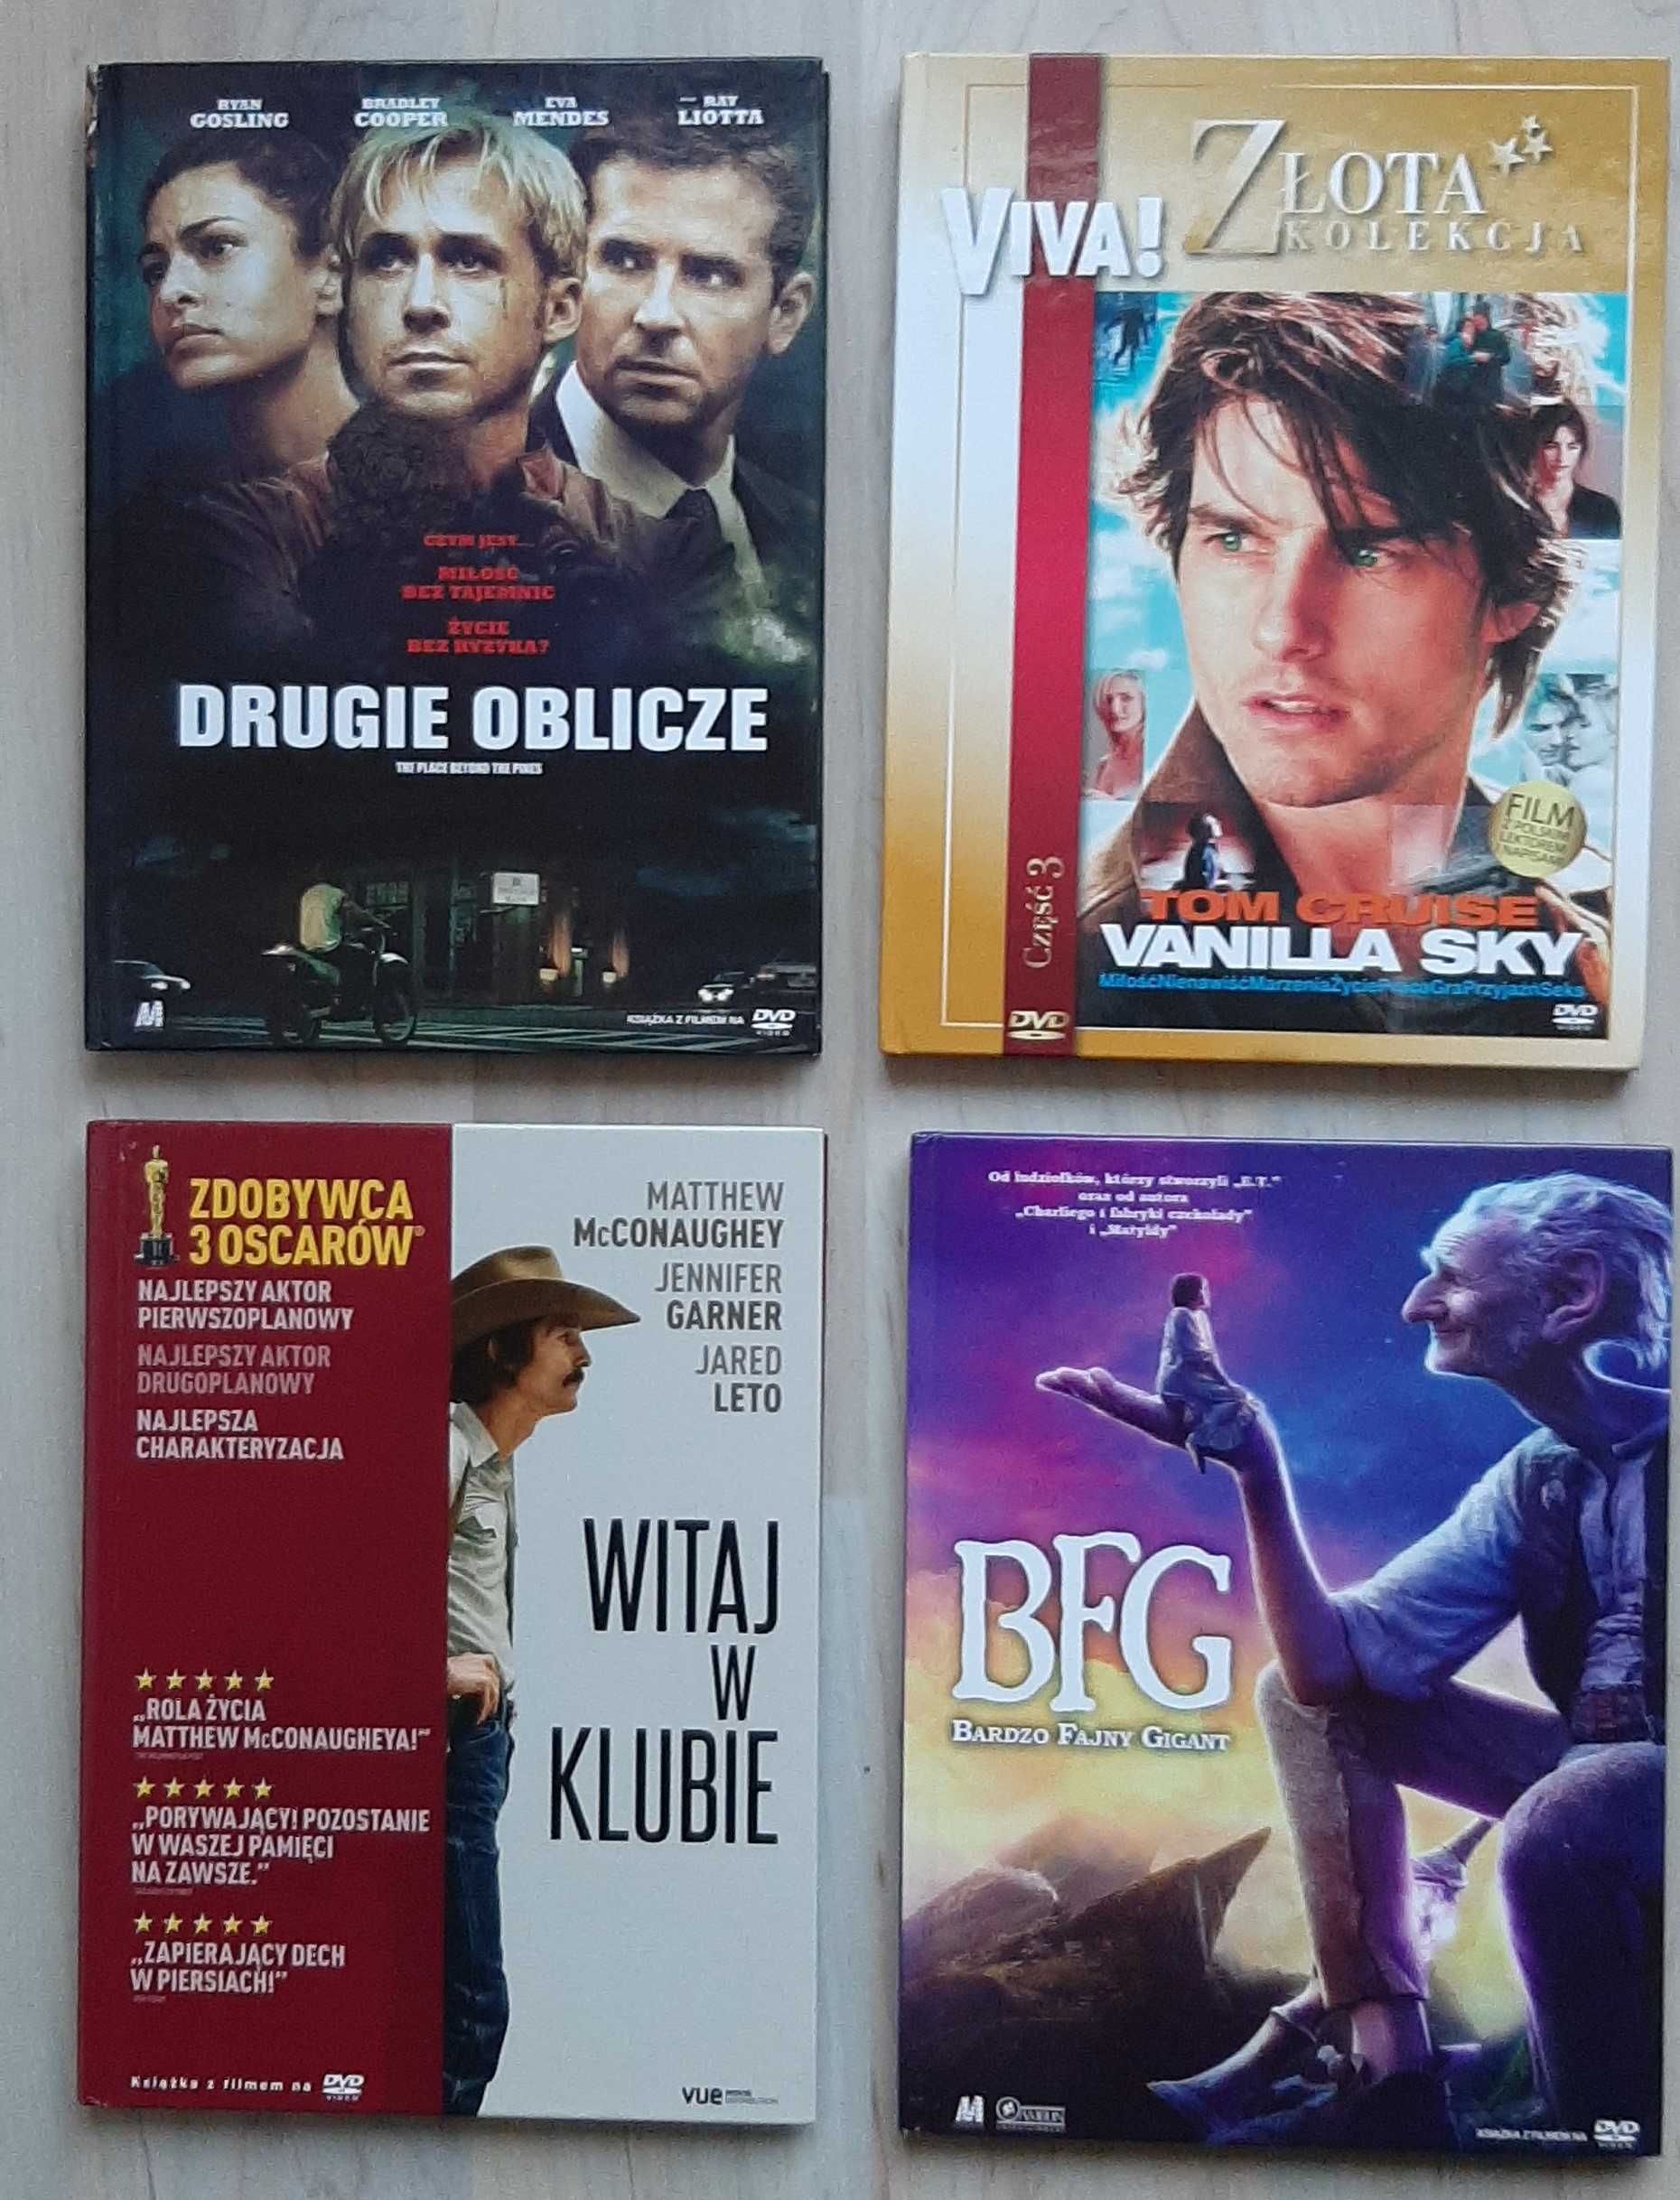 BFG, Vanilla, Drugie, Klub 4 x DVD wyd Polskie booklet